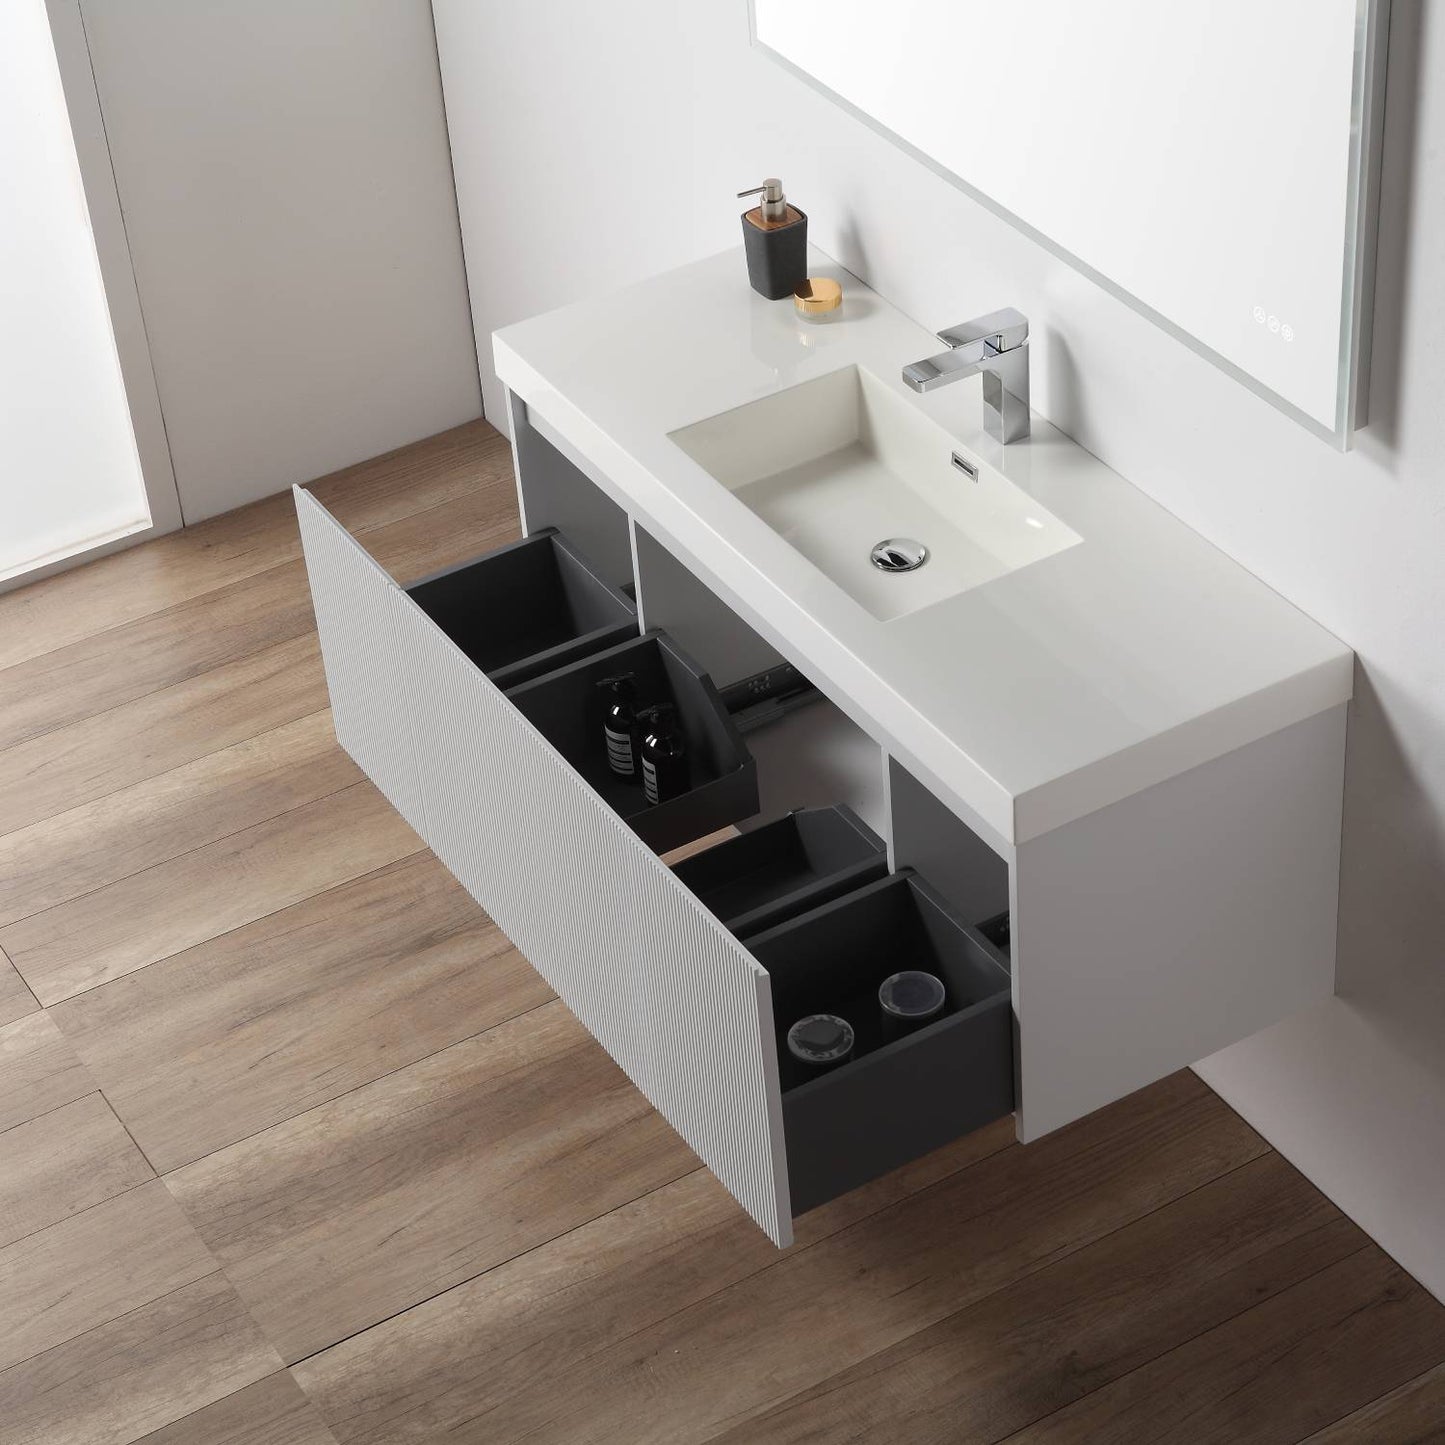 Positano 48" Floating Bathroom Vanity with Single Acrylic Sink & 2 Side Cabinets - Light Grey